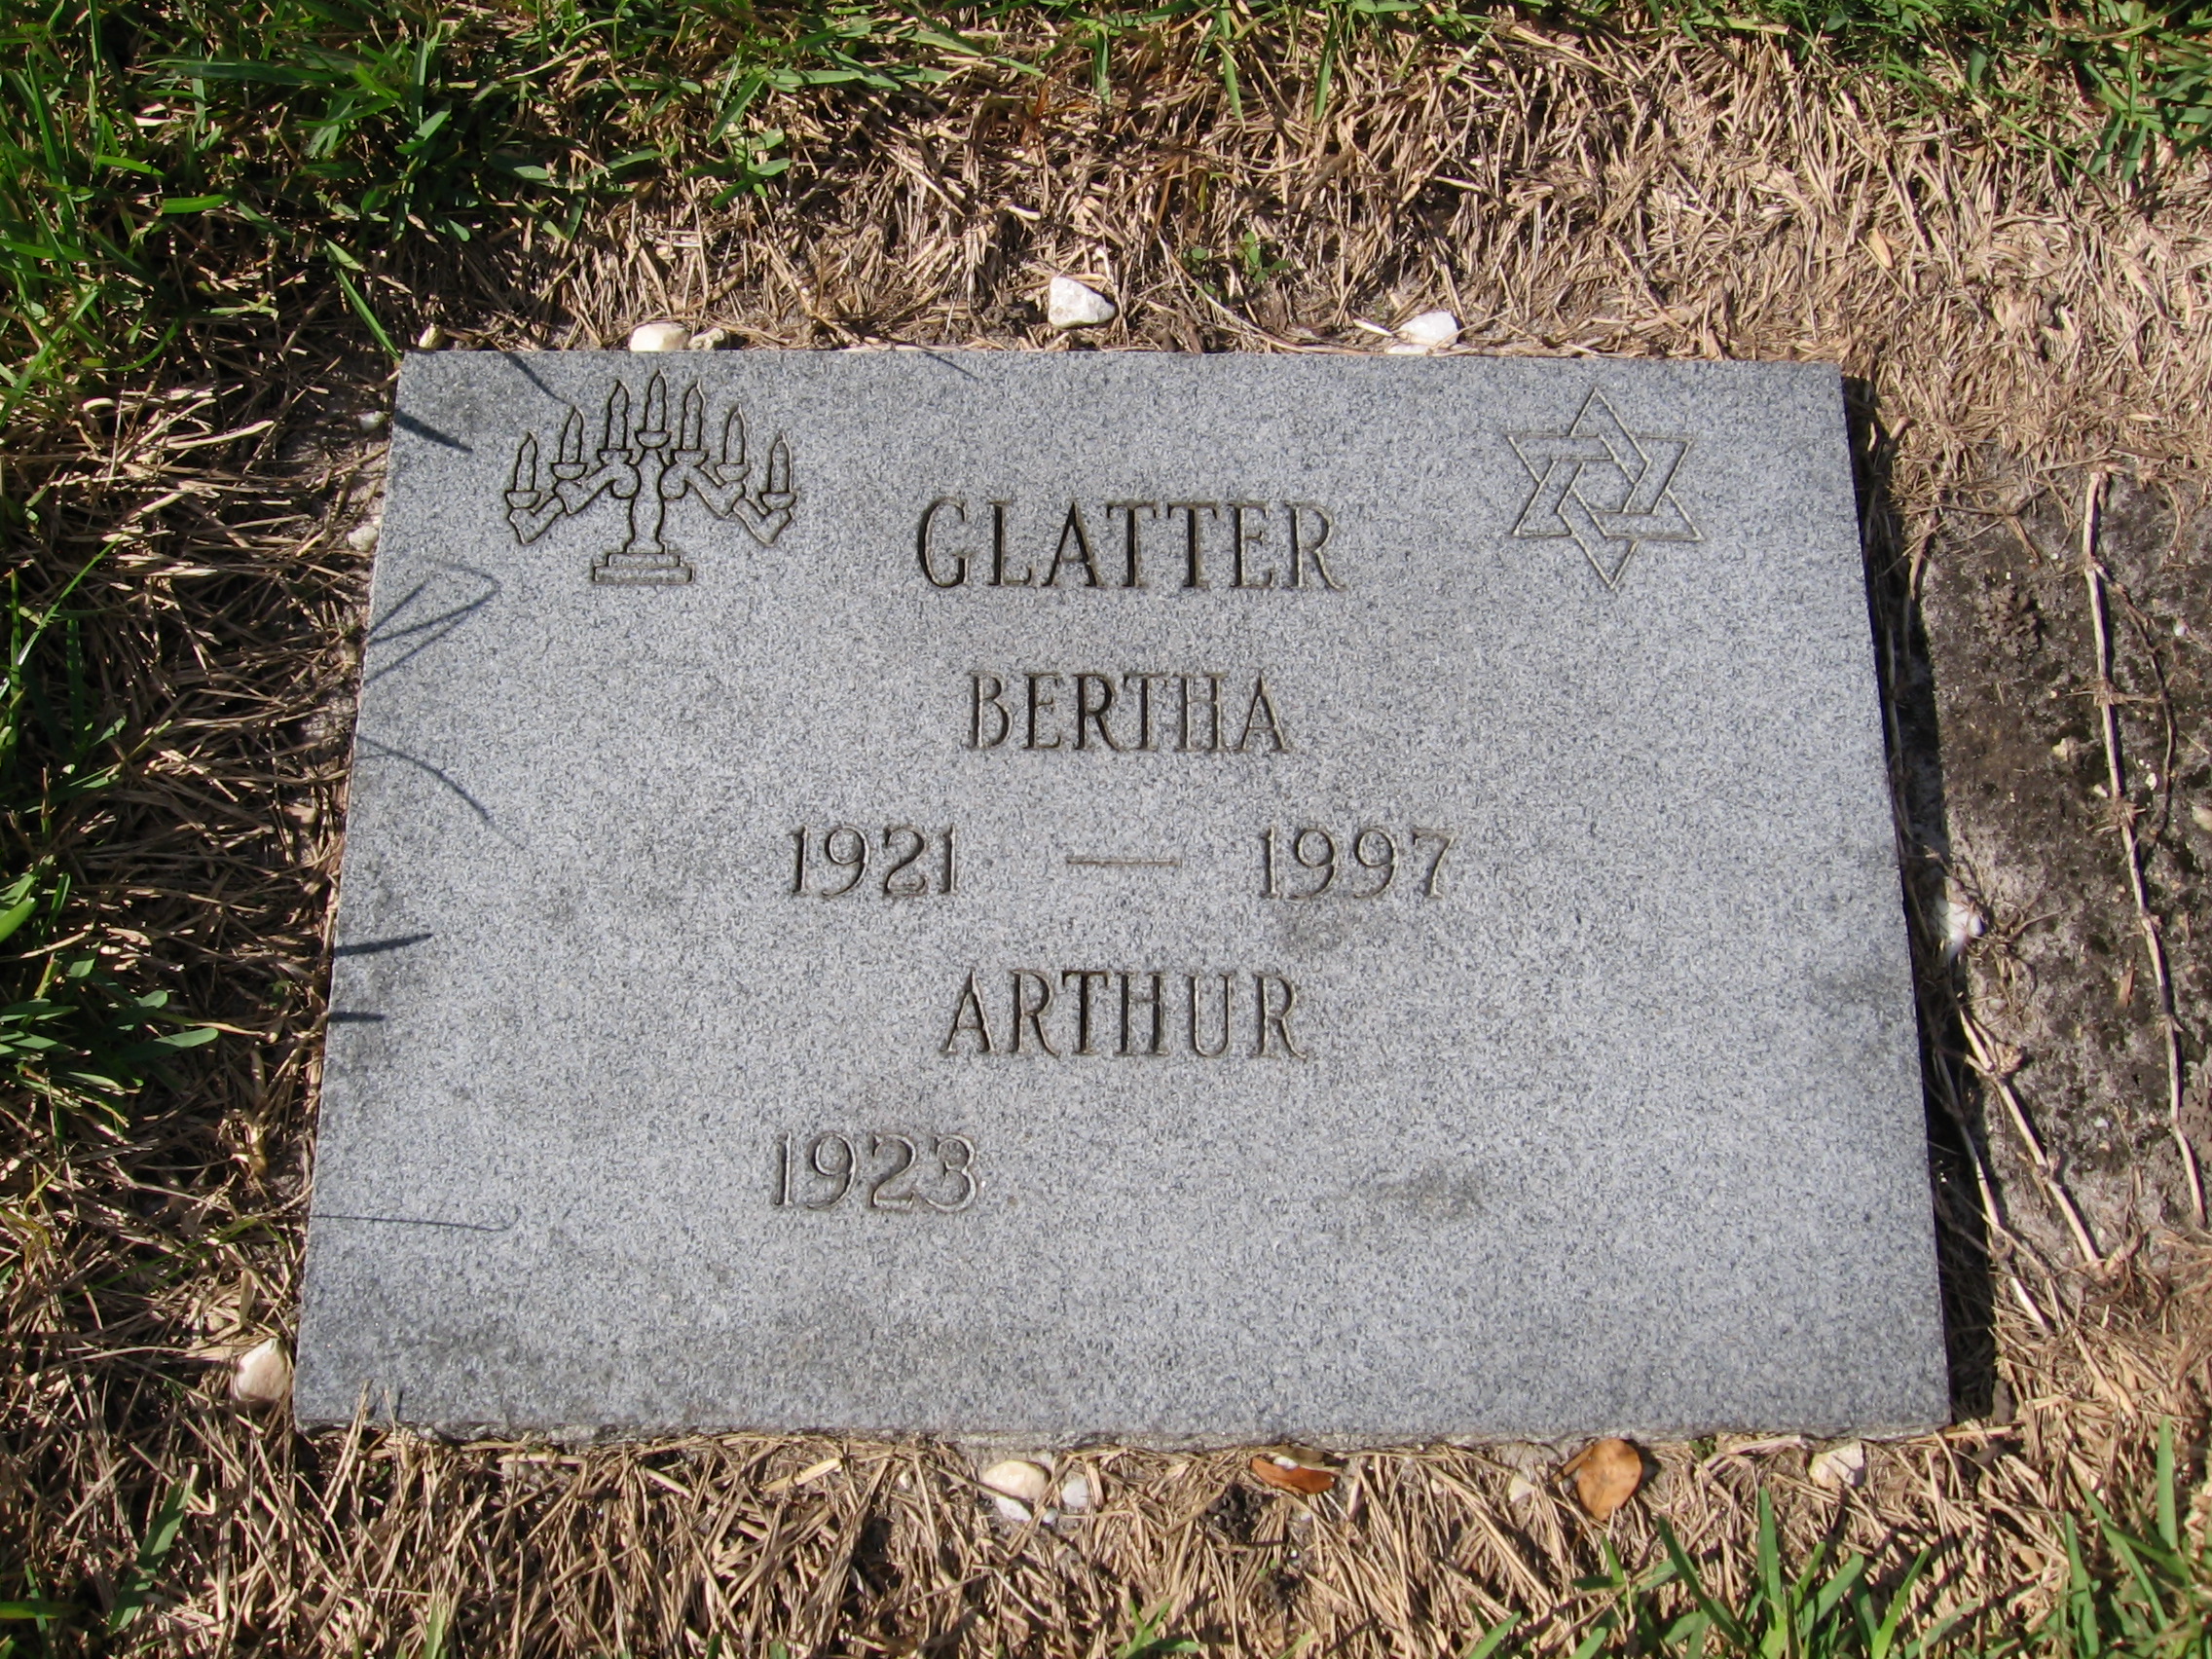 Arthur Glatter